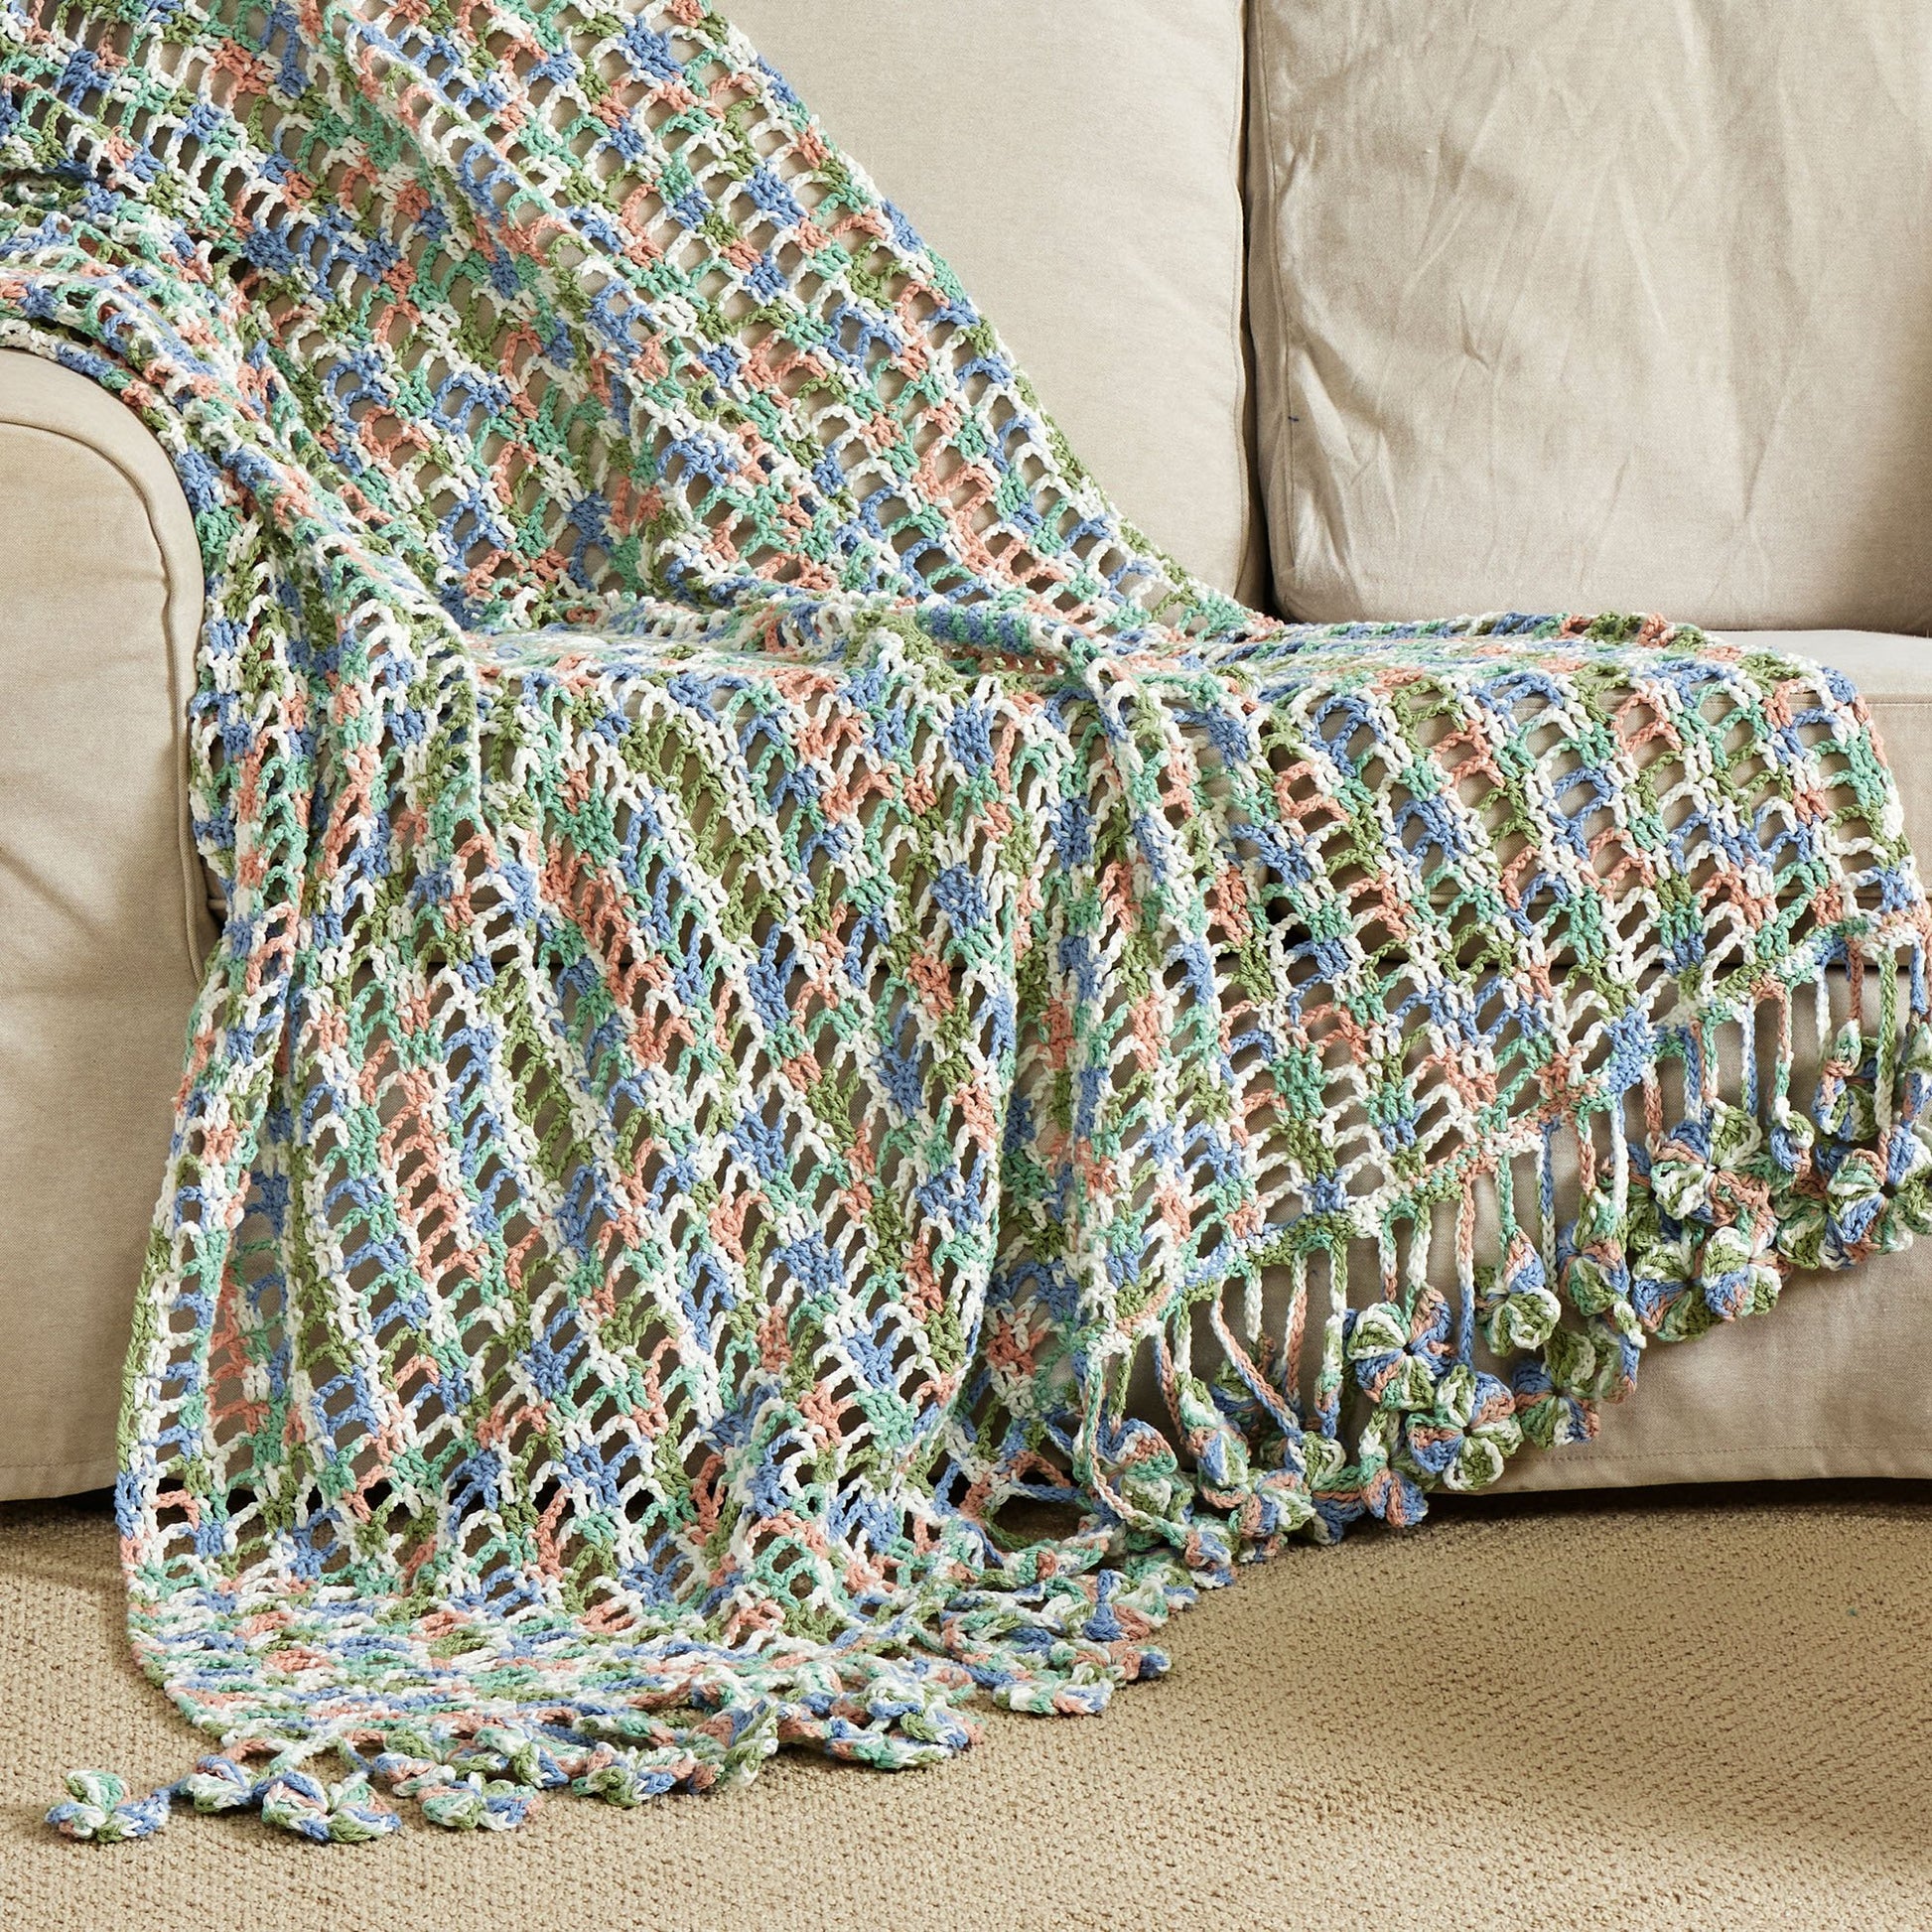 Free Bernat Crochet Floral Blanket Pattern